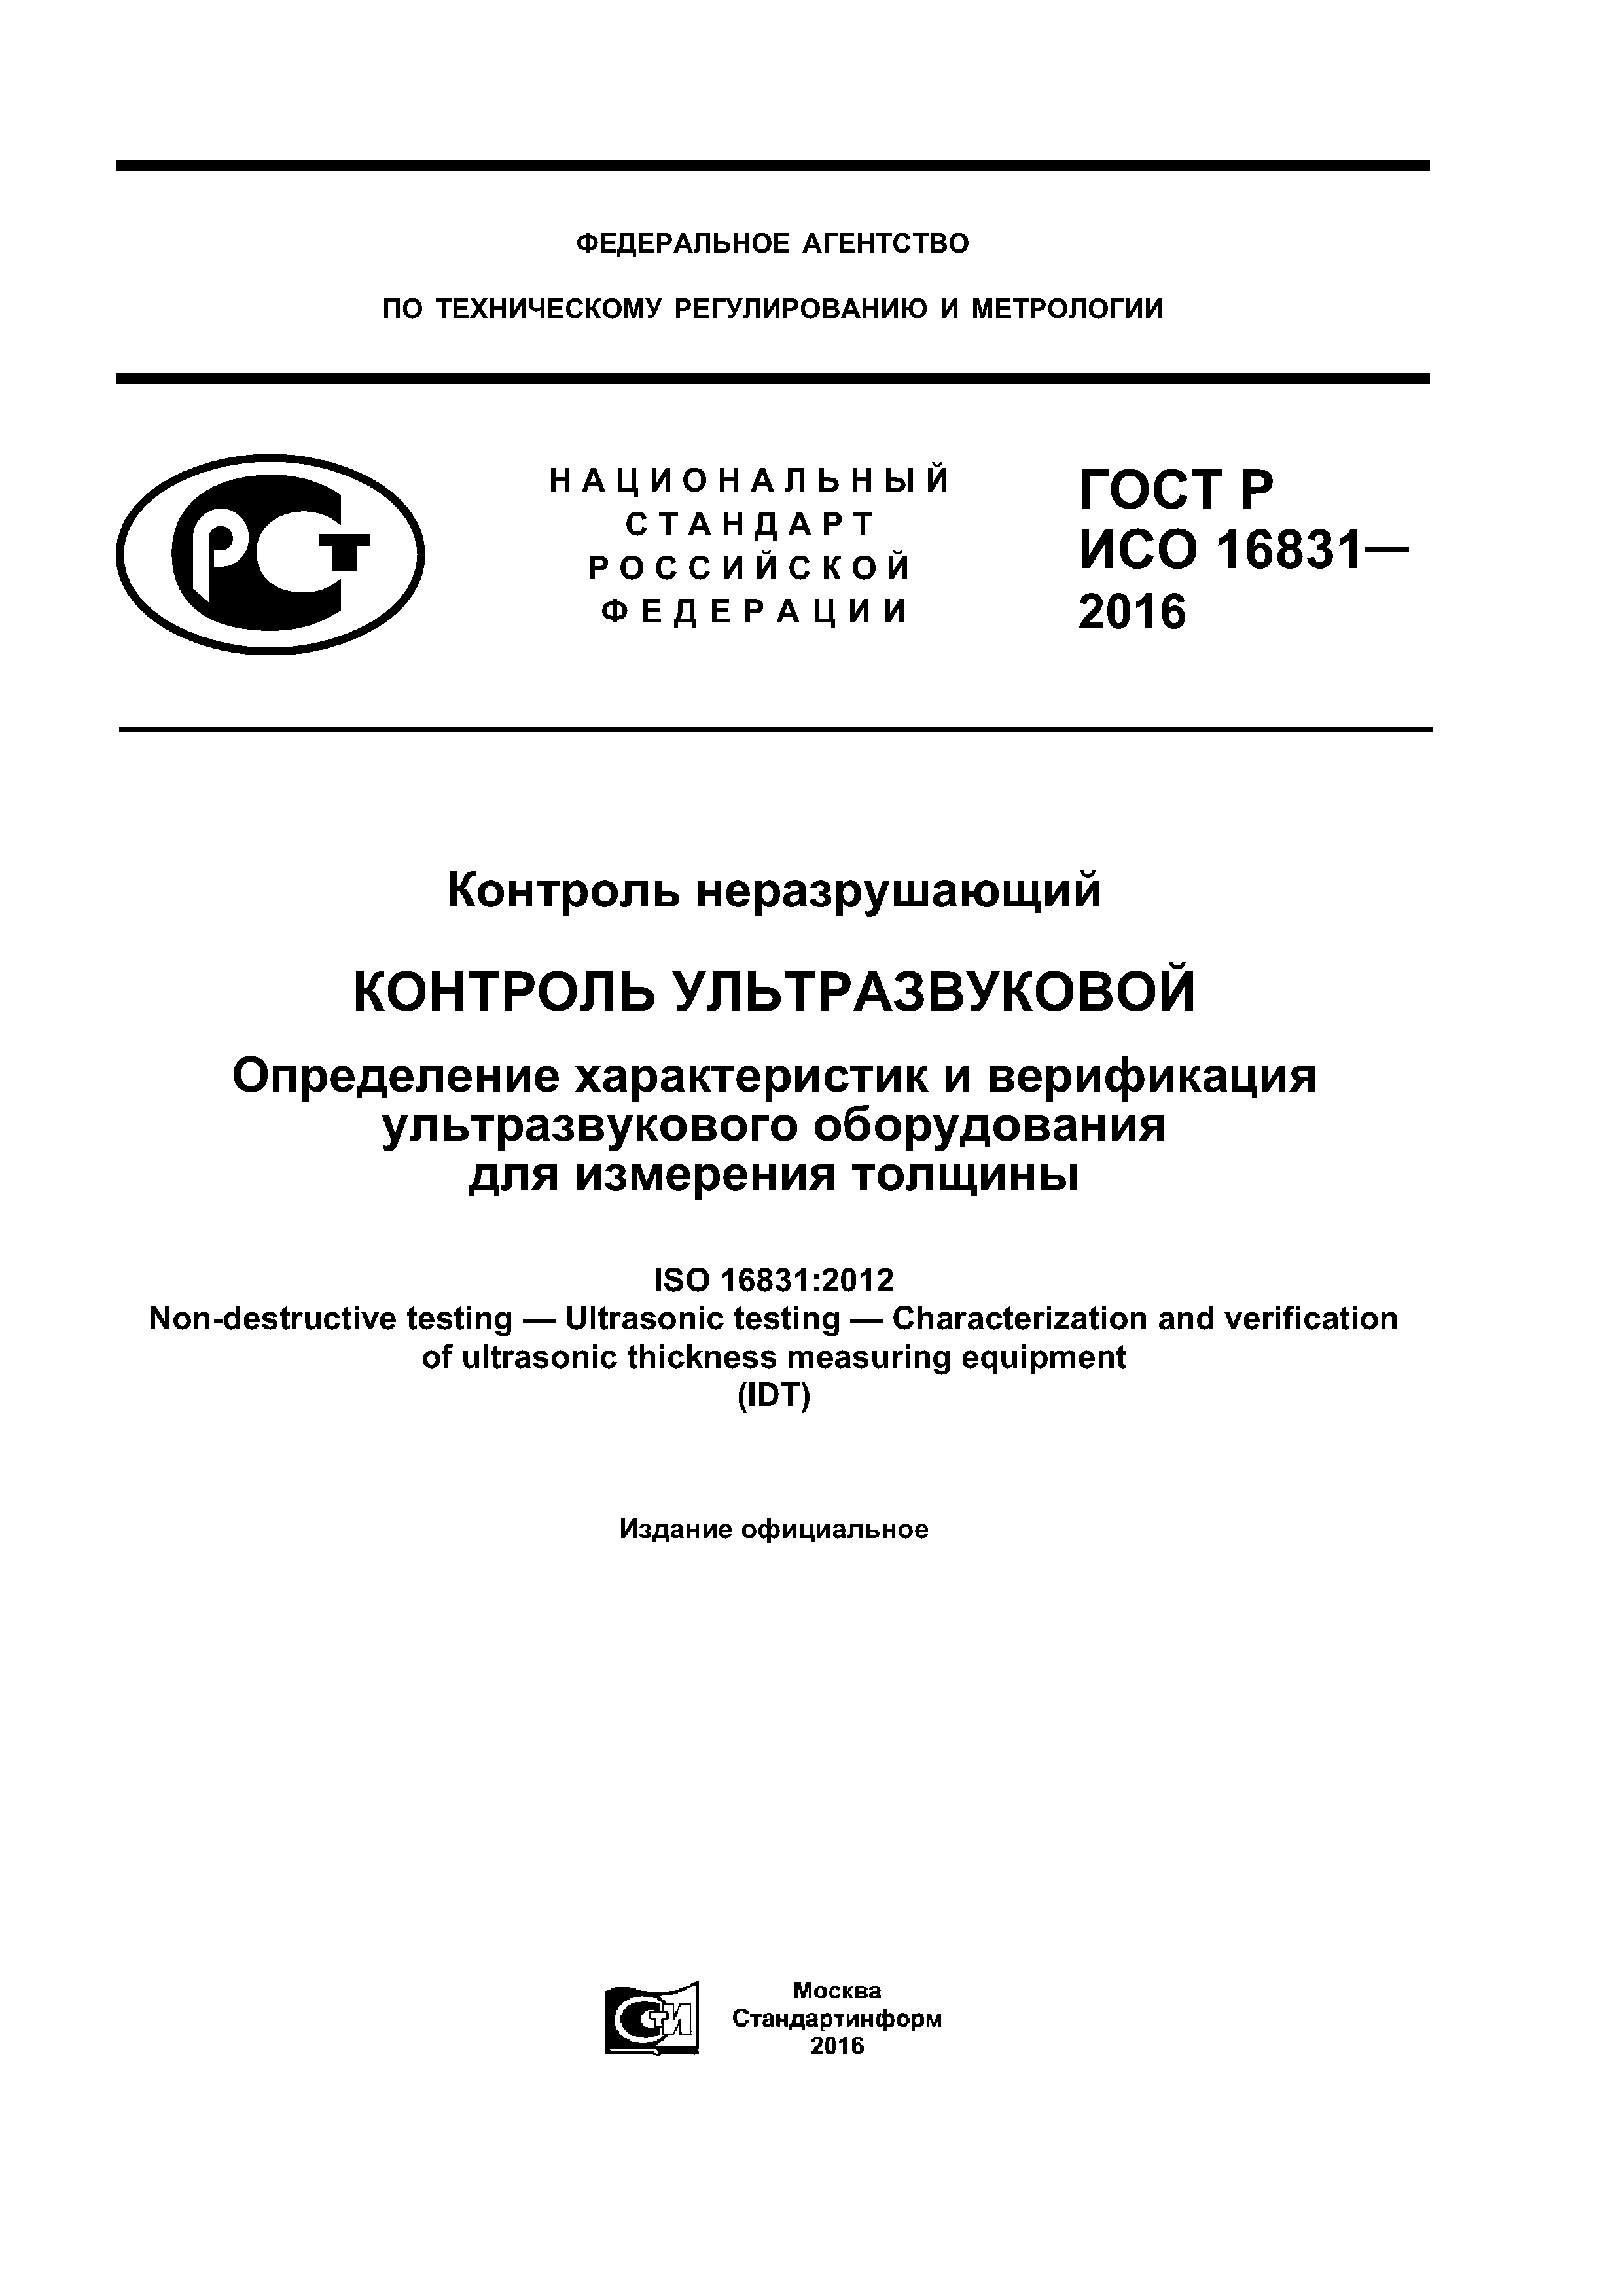 ГОСТ Р ИСО 16831-2016